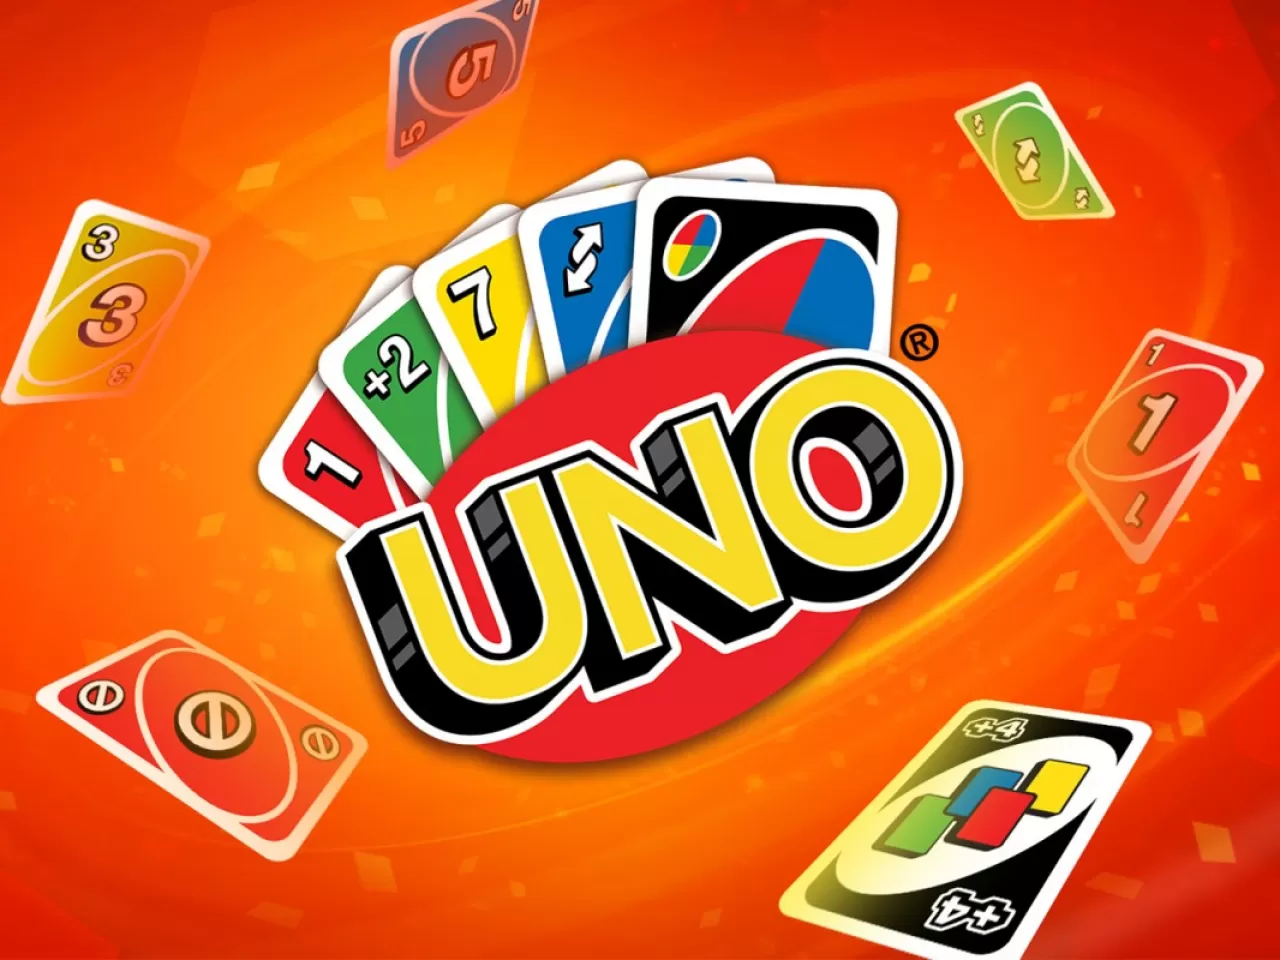 Uno Nasıl Oynanır? Meraklısına Uno İle İlgili 8 Kural